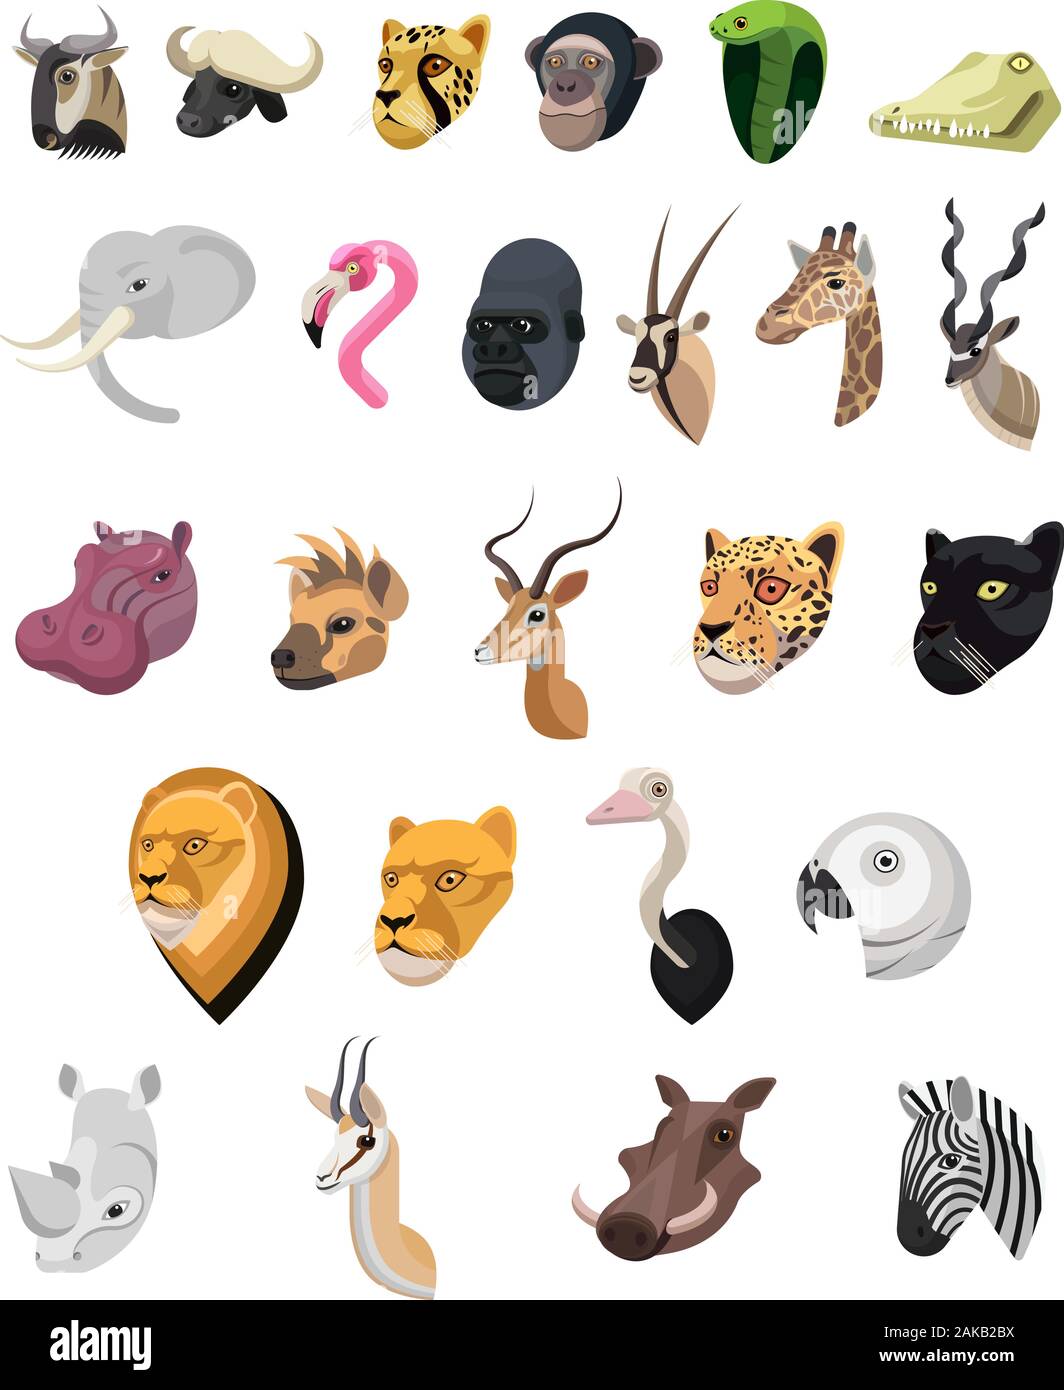 Afrikanische Tiere Porträt in einzigartig einfachen Cartoon Stil. Köpfe von Leoparden, Antilopen, Flamingo, Elefant, Schimpanse. Isolierte künstlerische styliz Stock Vektor